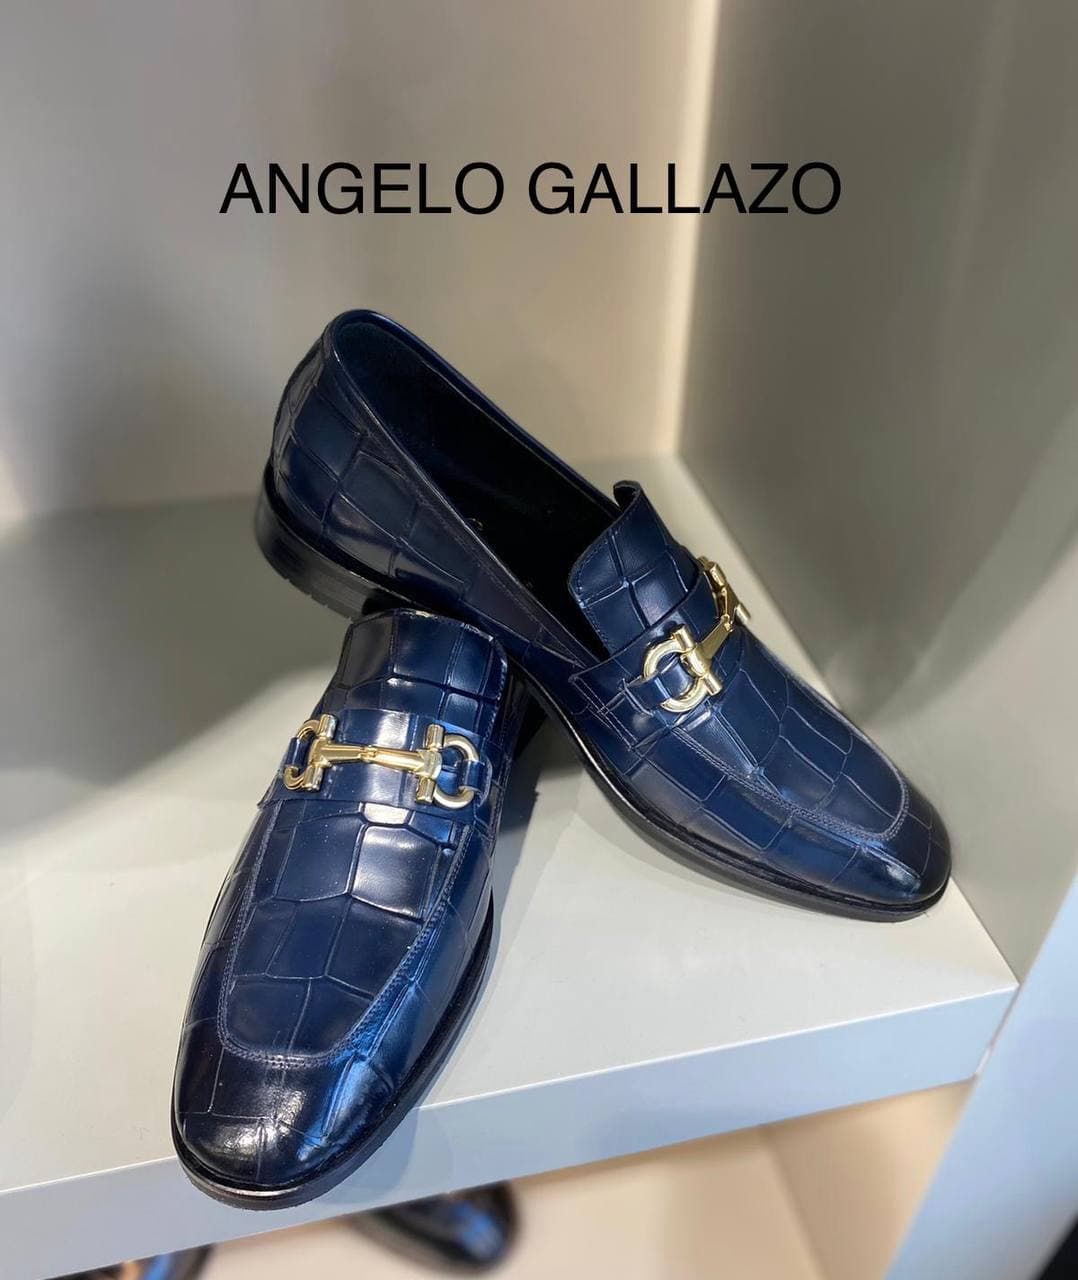 Chaussures Angelo Gallazo couleur bleue marine cirée mocassins à boucle